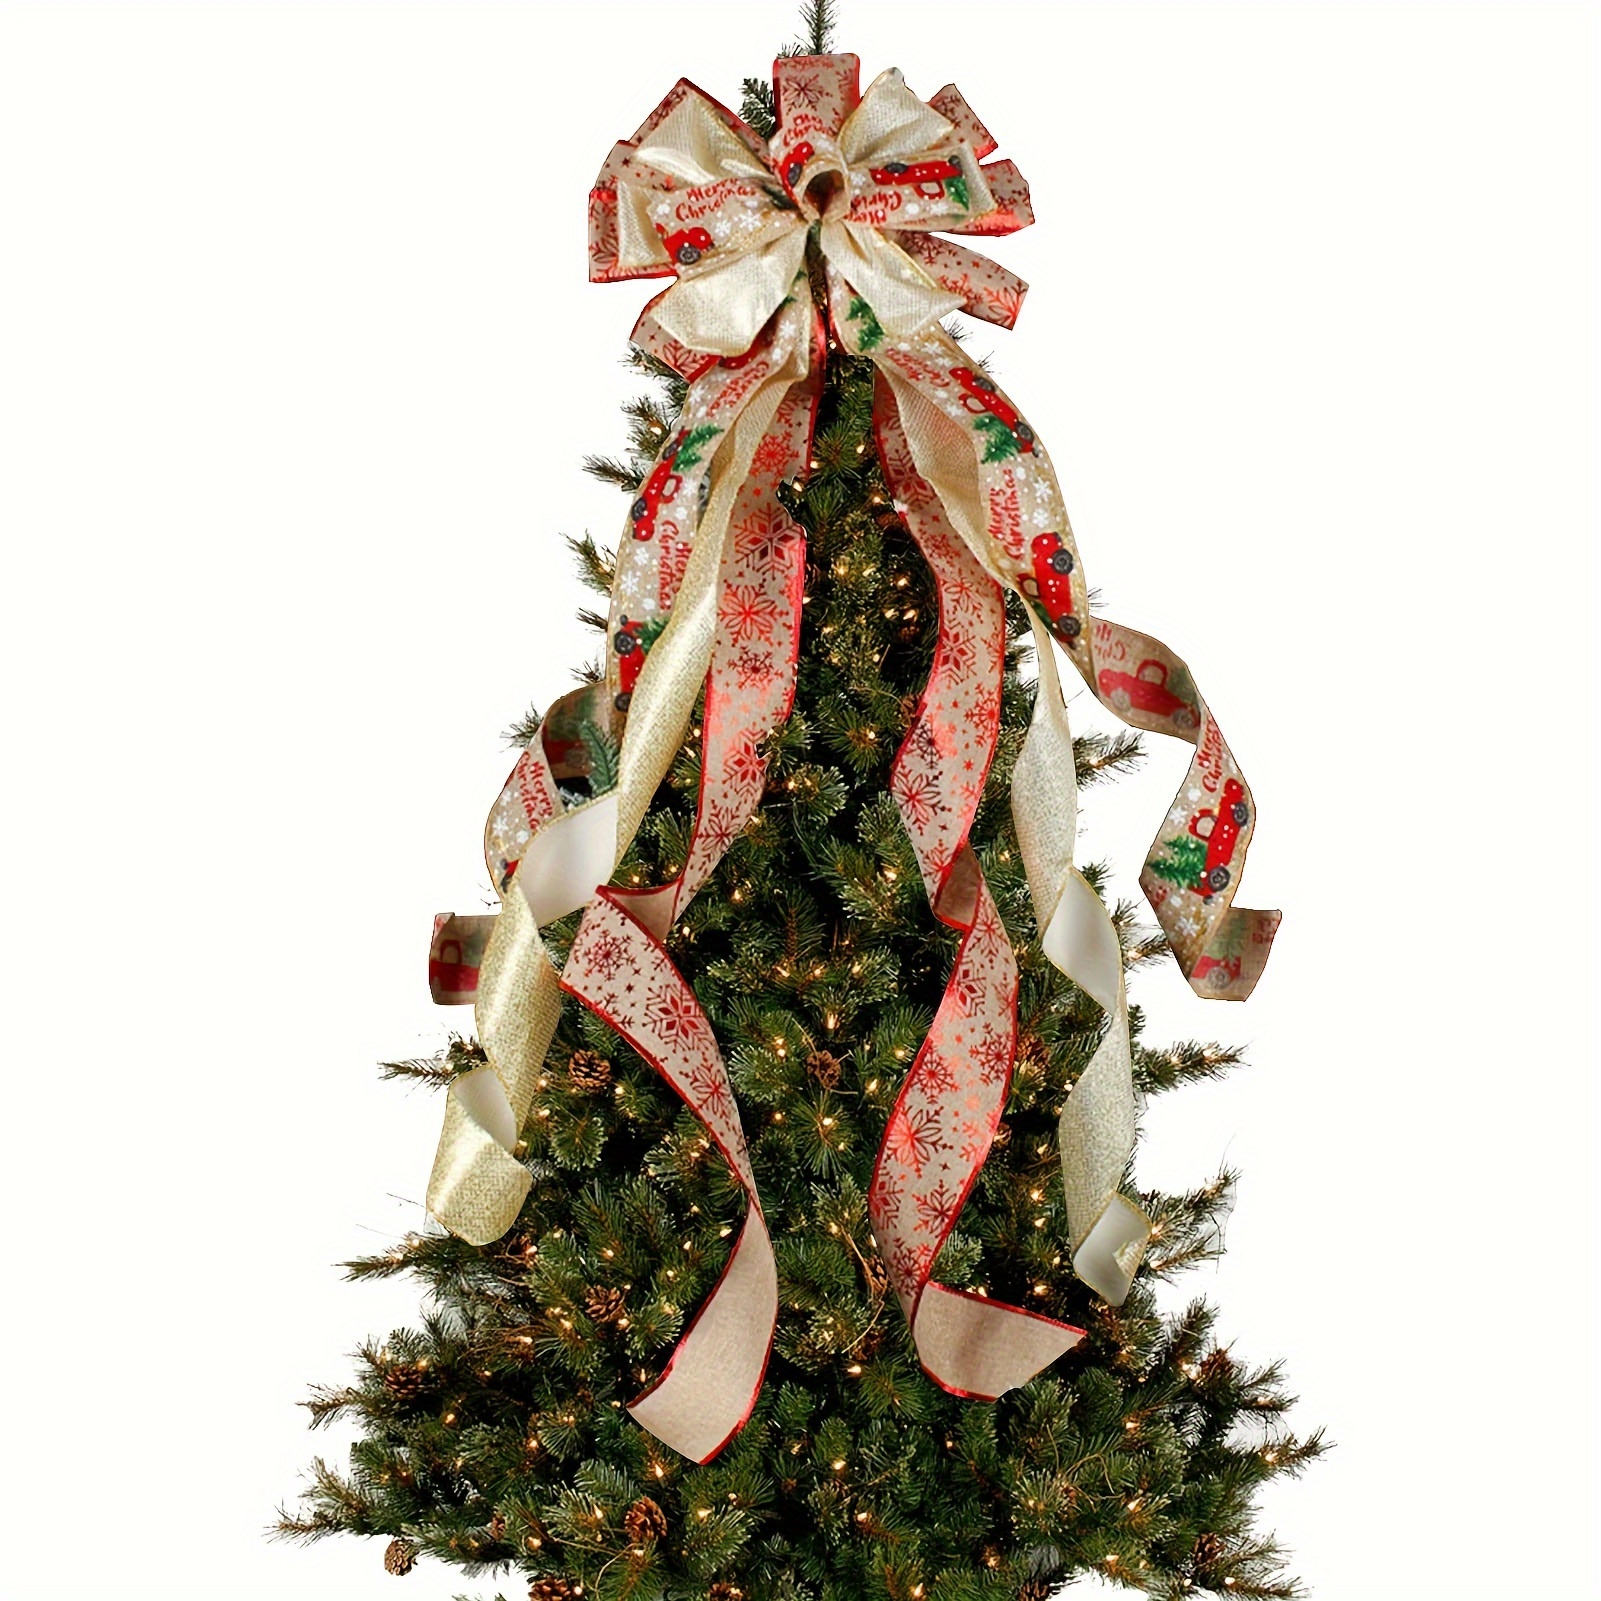 Maison de décoration, arbre de Noël des milliers de morceaux de